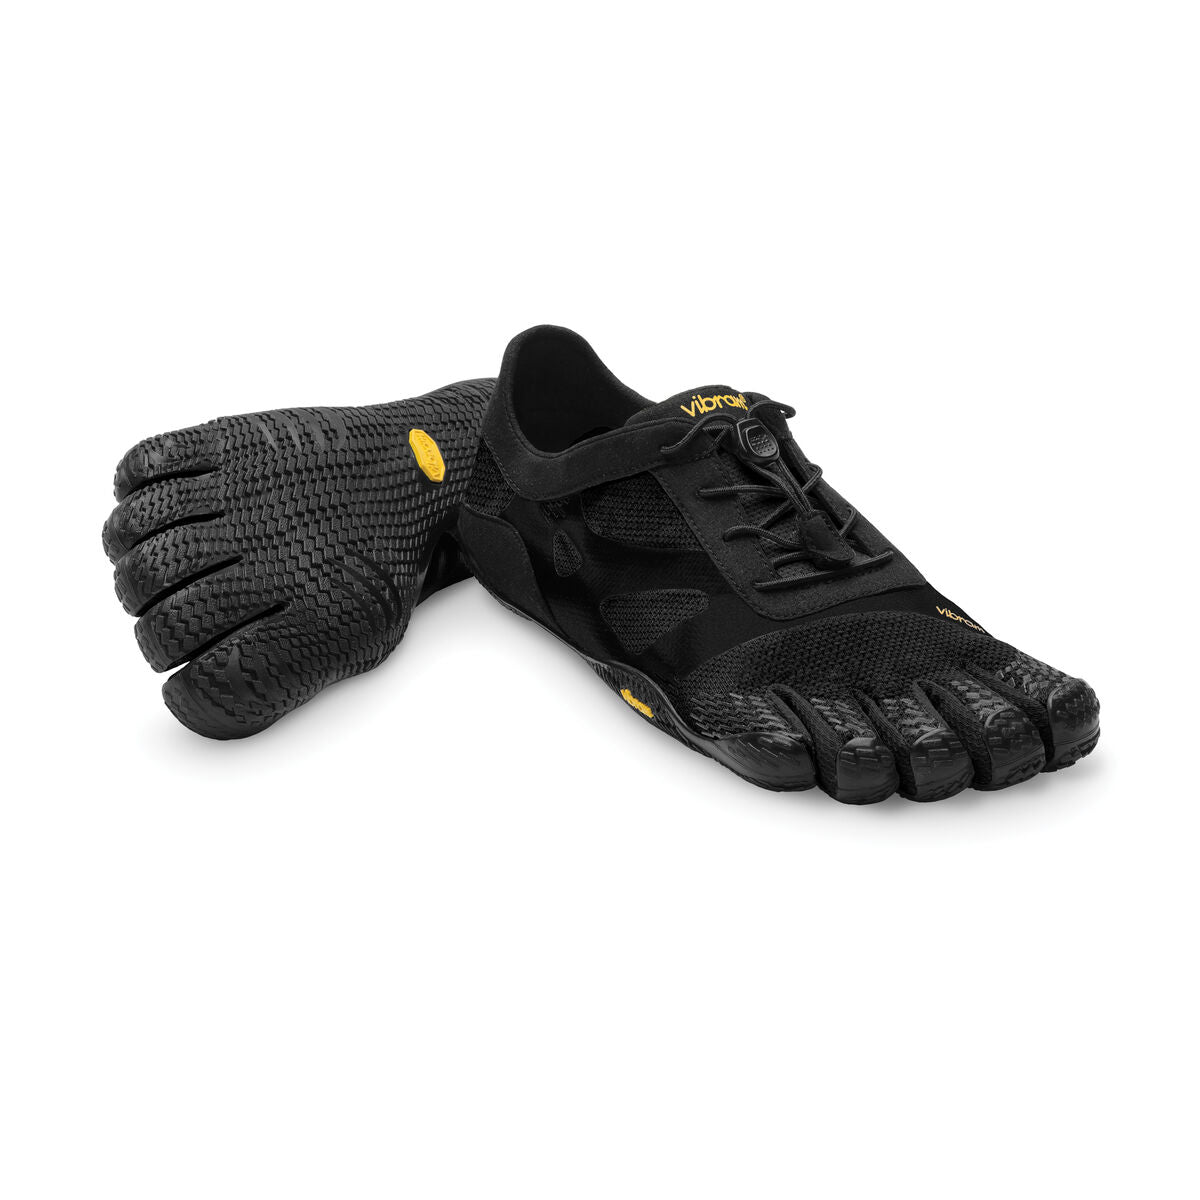 Men's Vibram Five Fingers KSO EVO Training Shoe in Black from the front